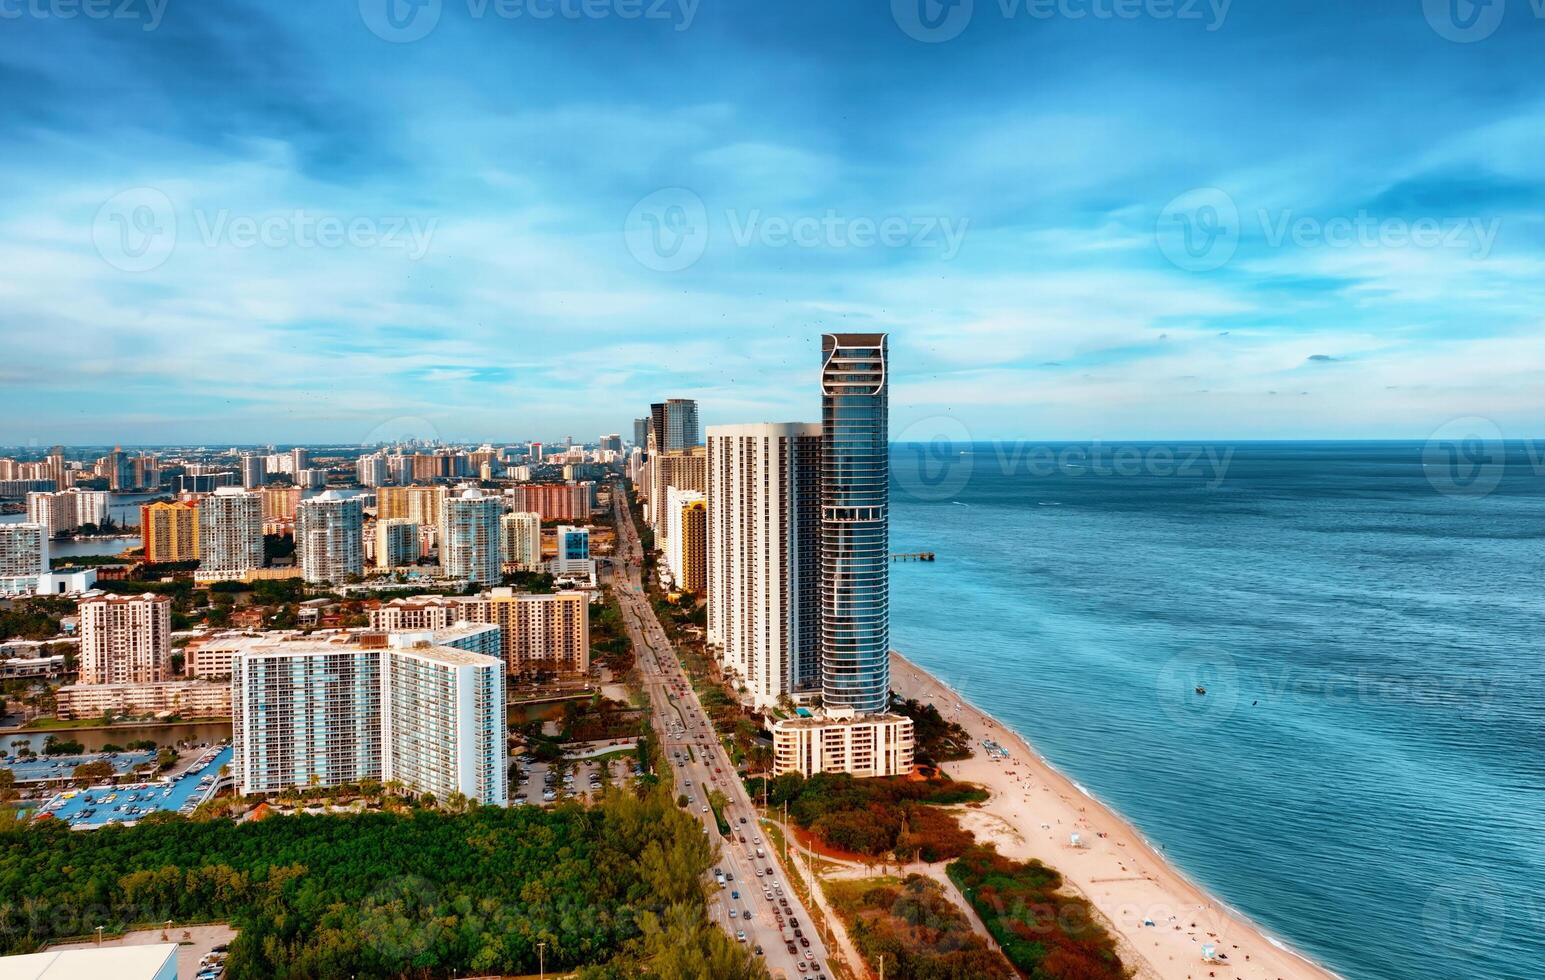 aereo Visualizza di miami città e oceano, travolgente paesaggio urbano annidato a fianco vasto oceano acque foto